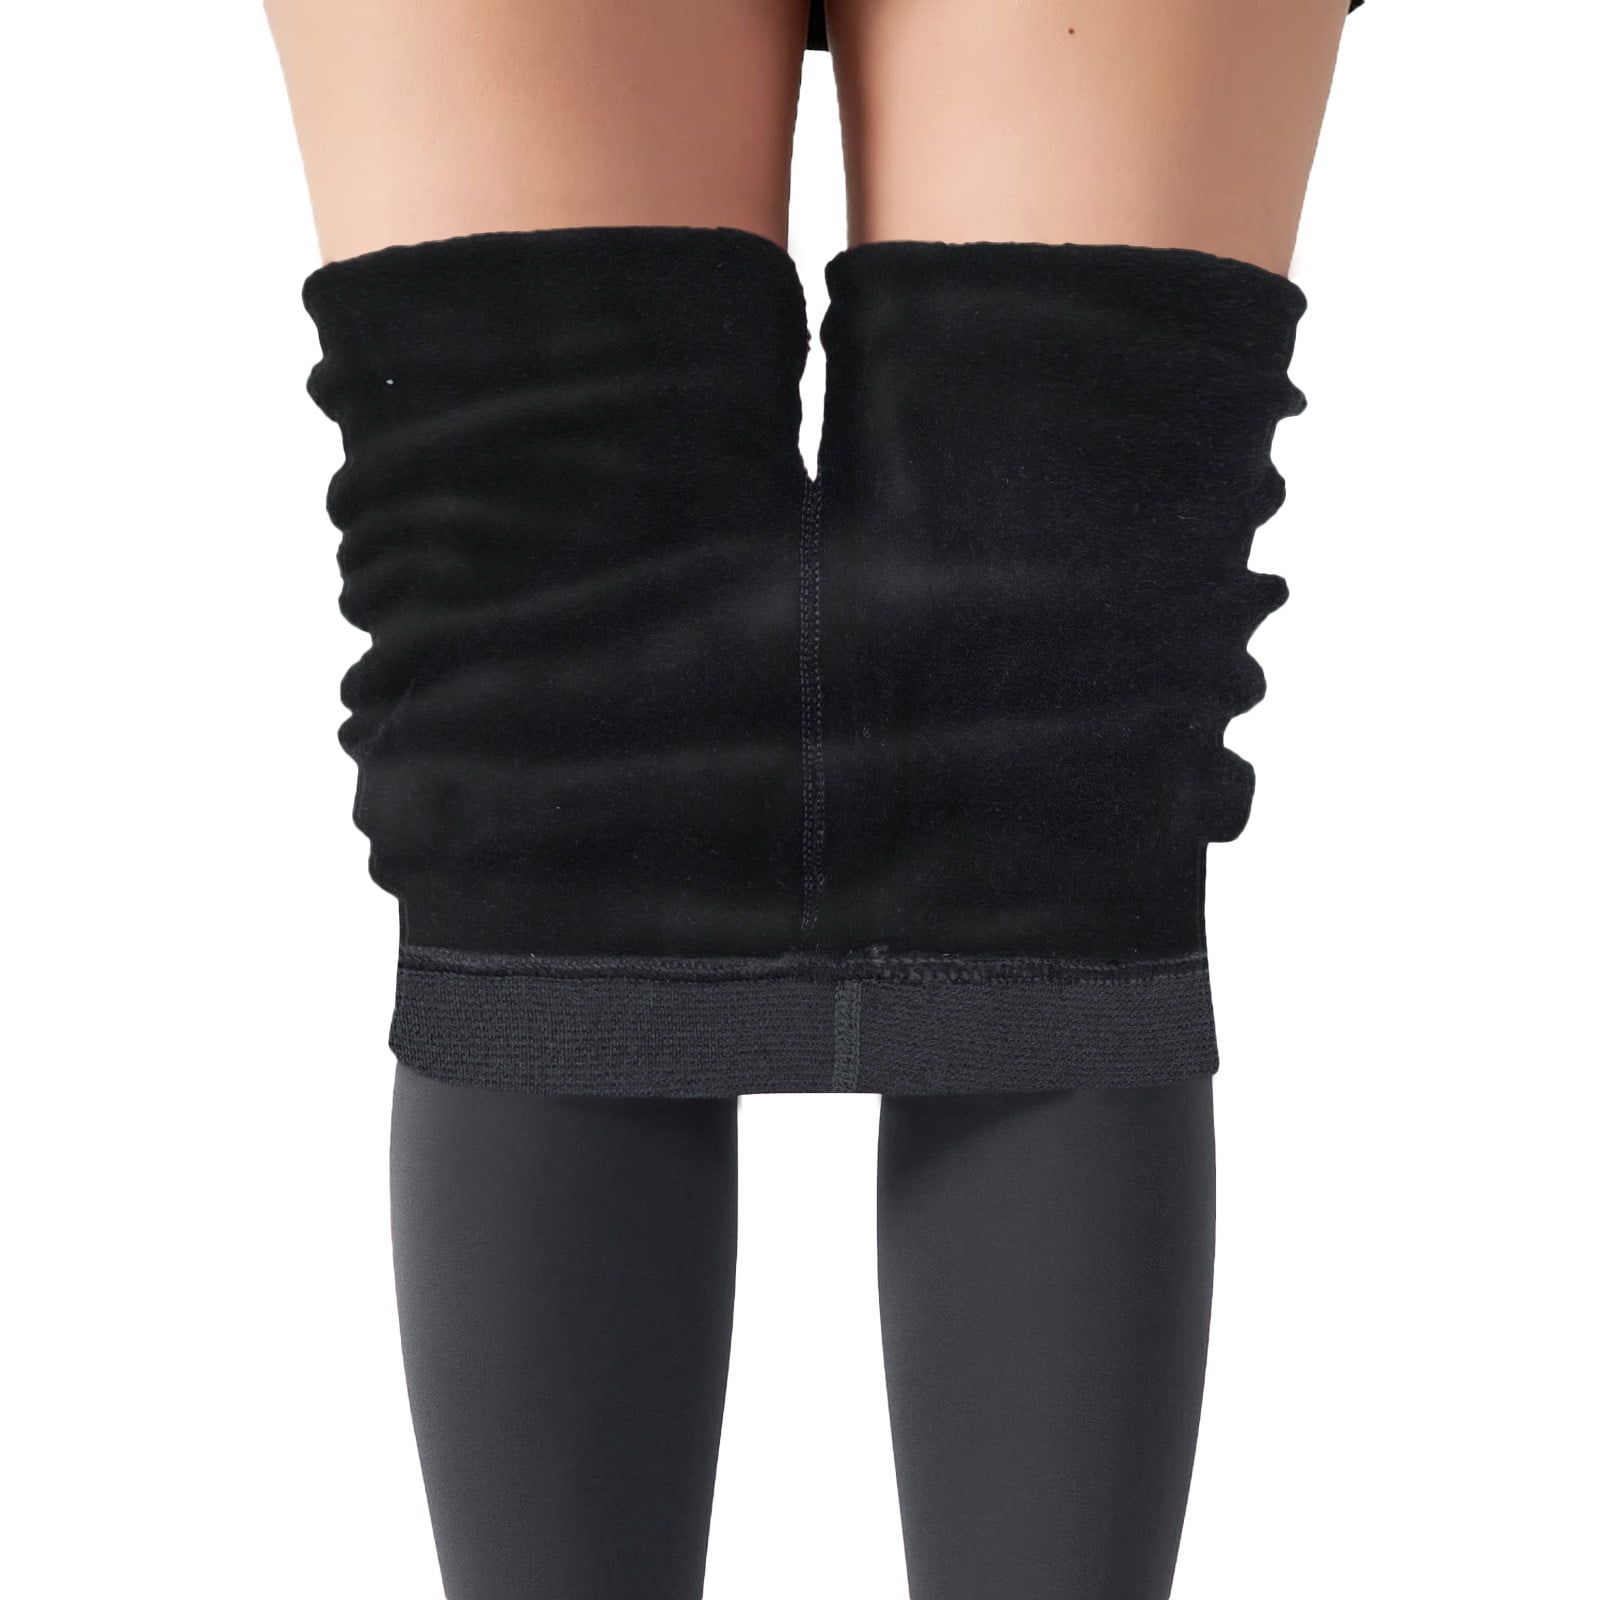 ZIZOCWA Legging Tights for Winter Under Dress Shorts Plus Velvet